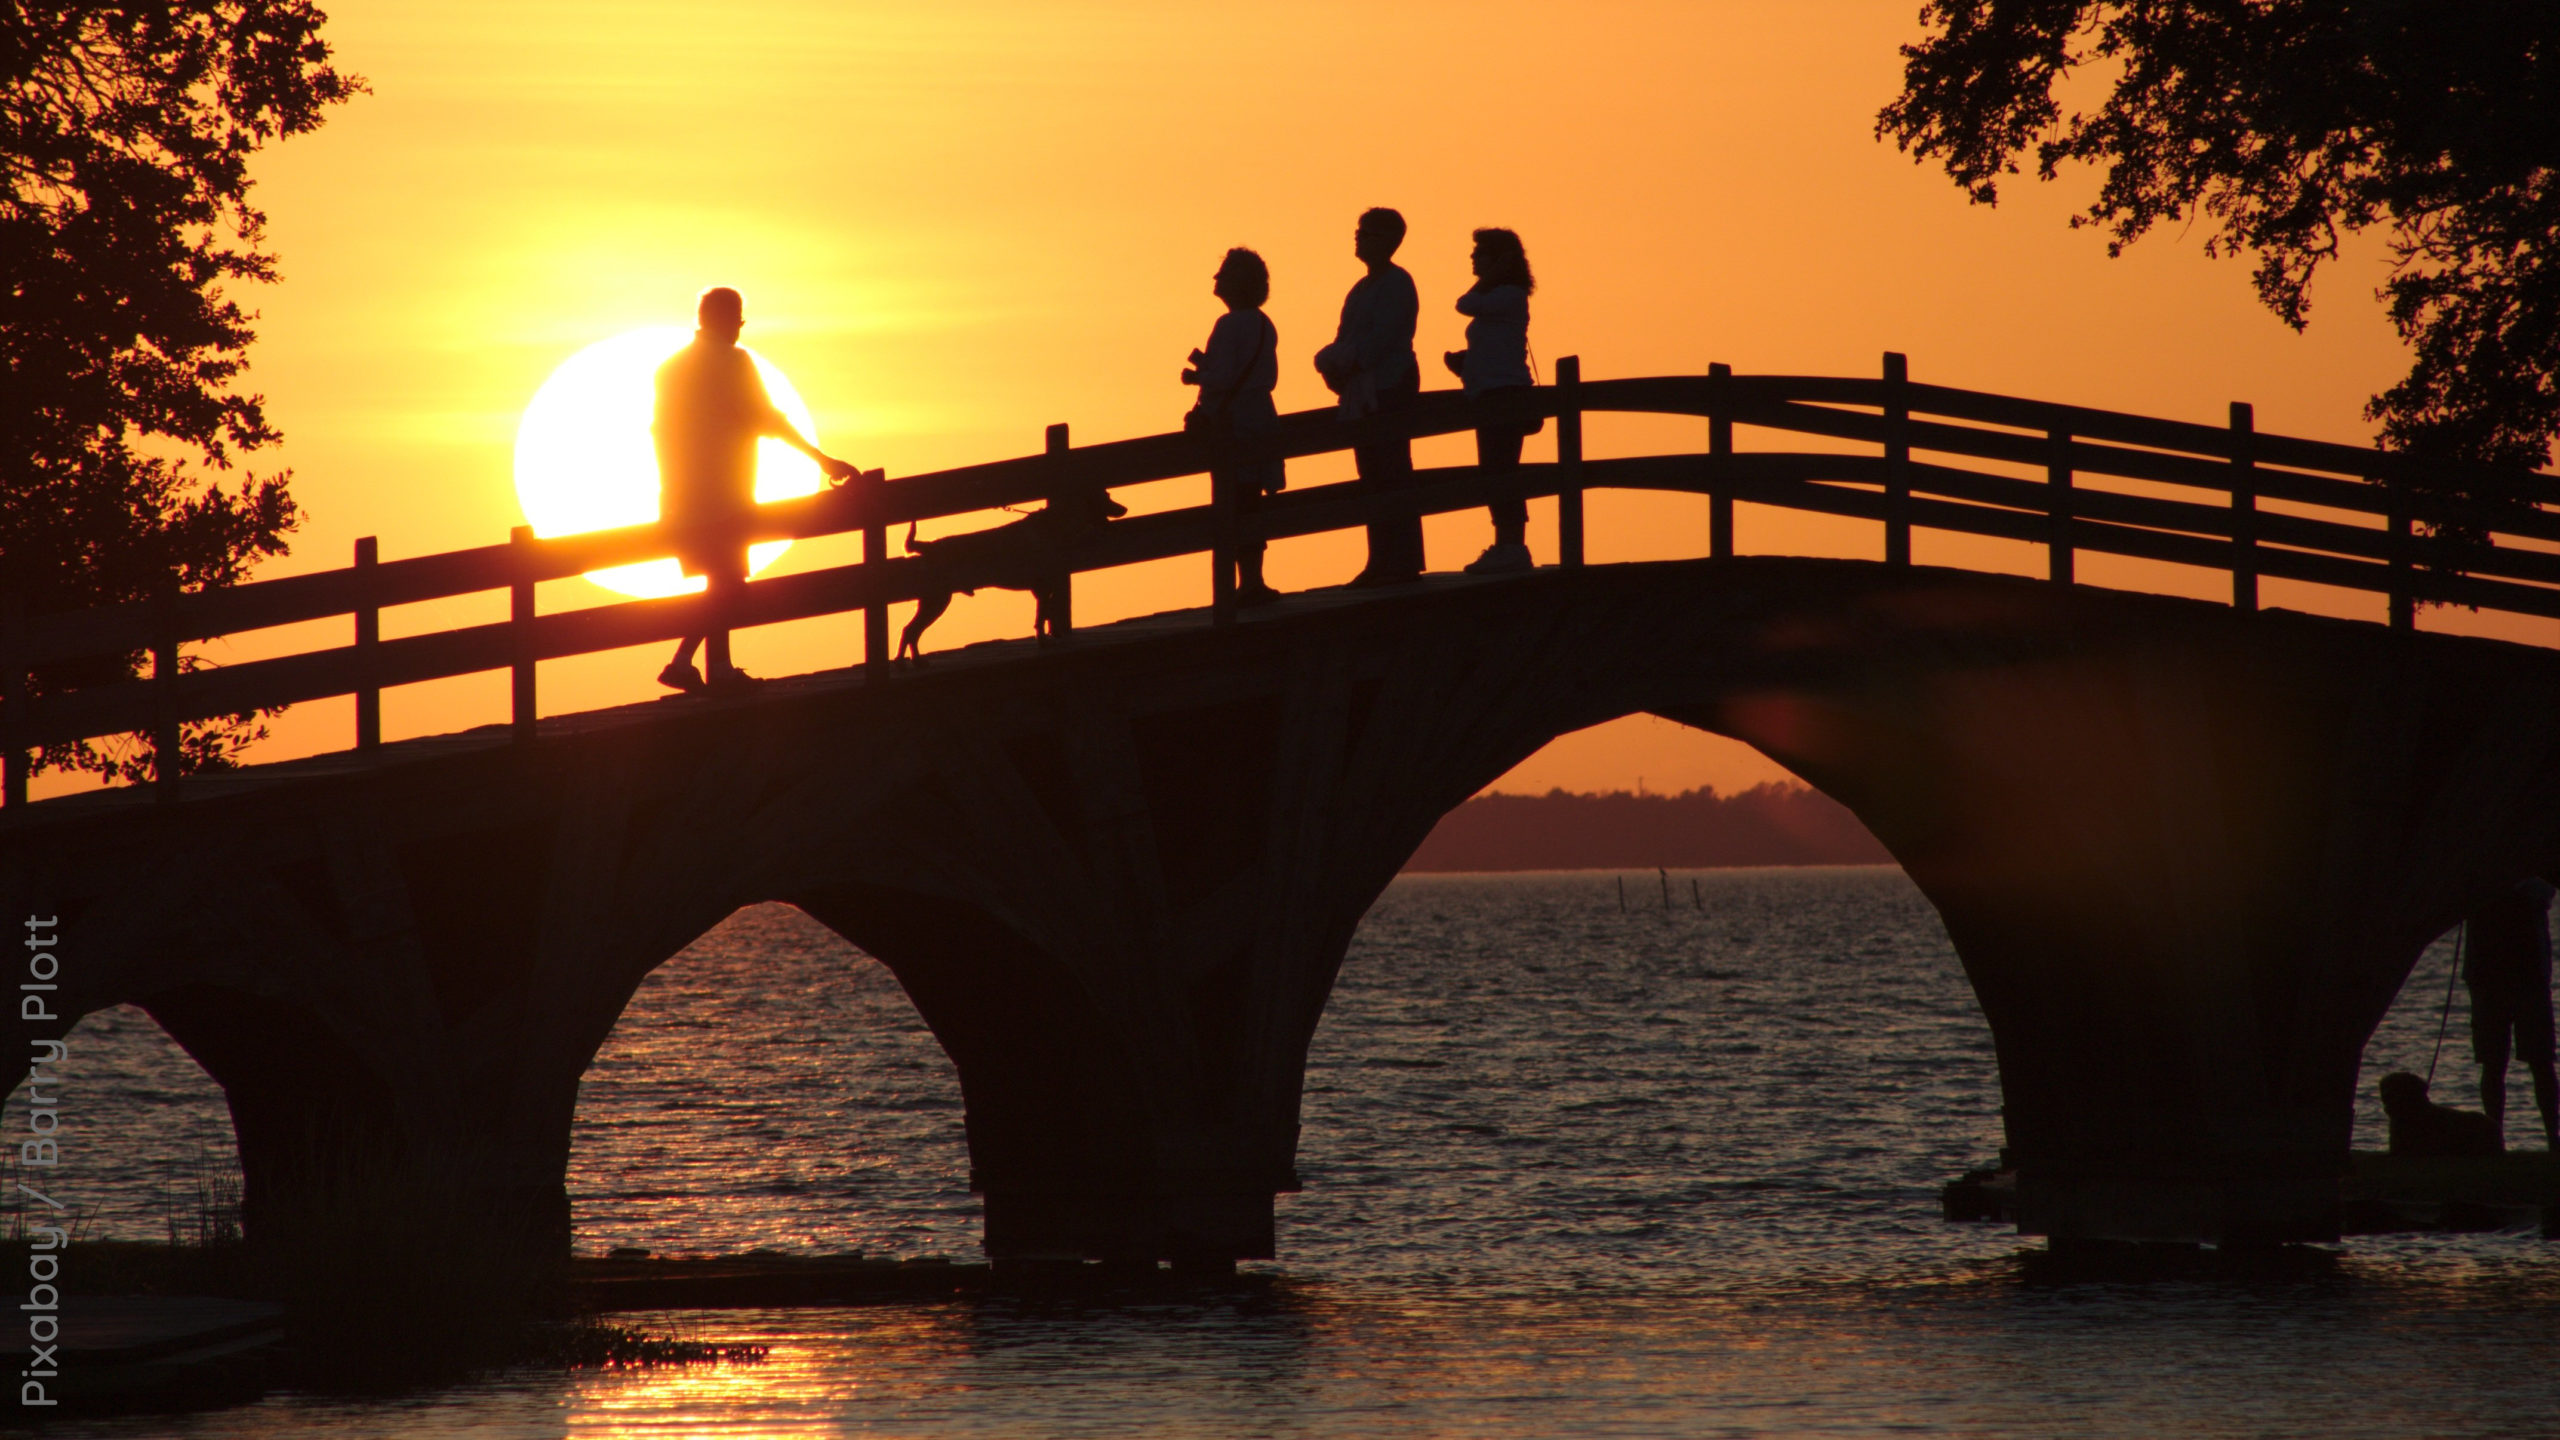 Abendhimmel mit Sonnenuntergang, Menschen auf einer Brücke über das Wasser